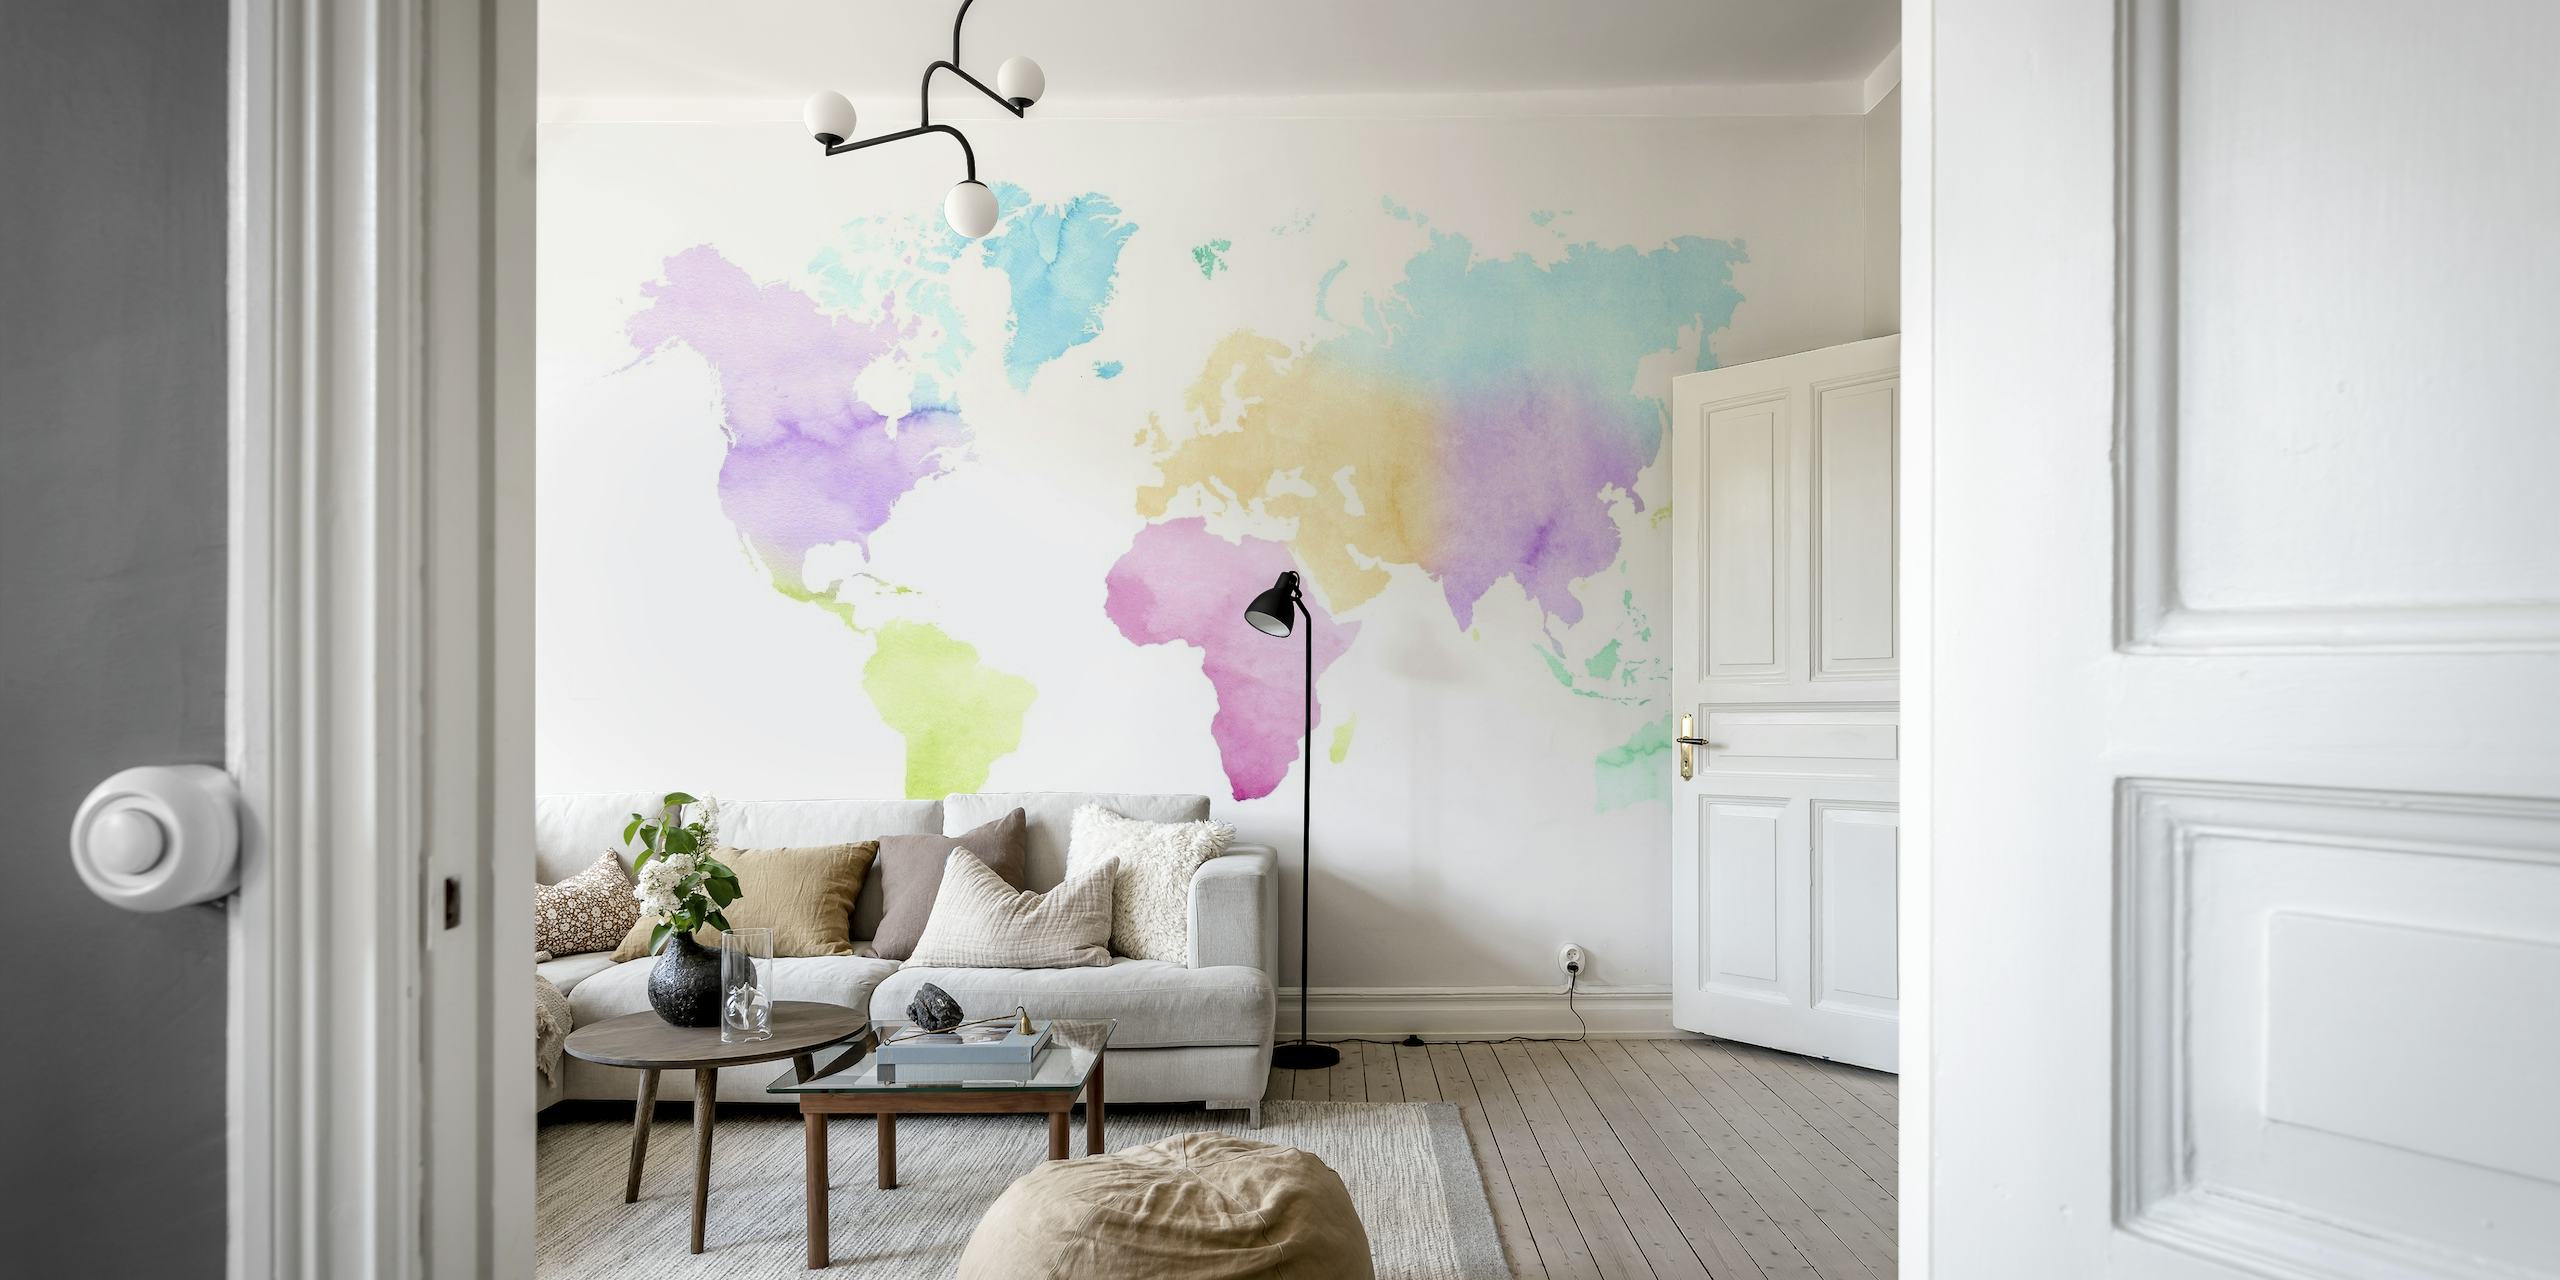 Kids Watercolor World Map Wallpaper Mural